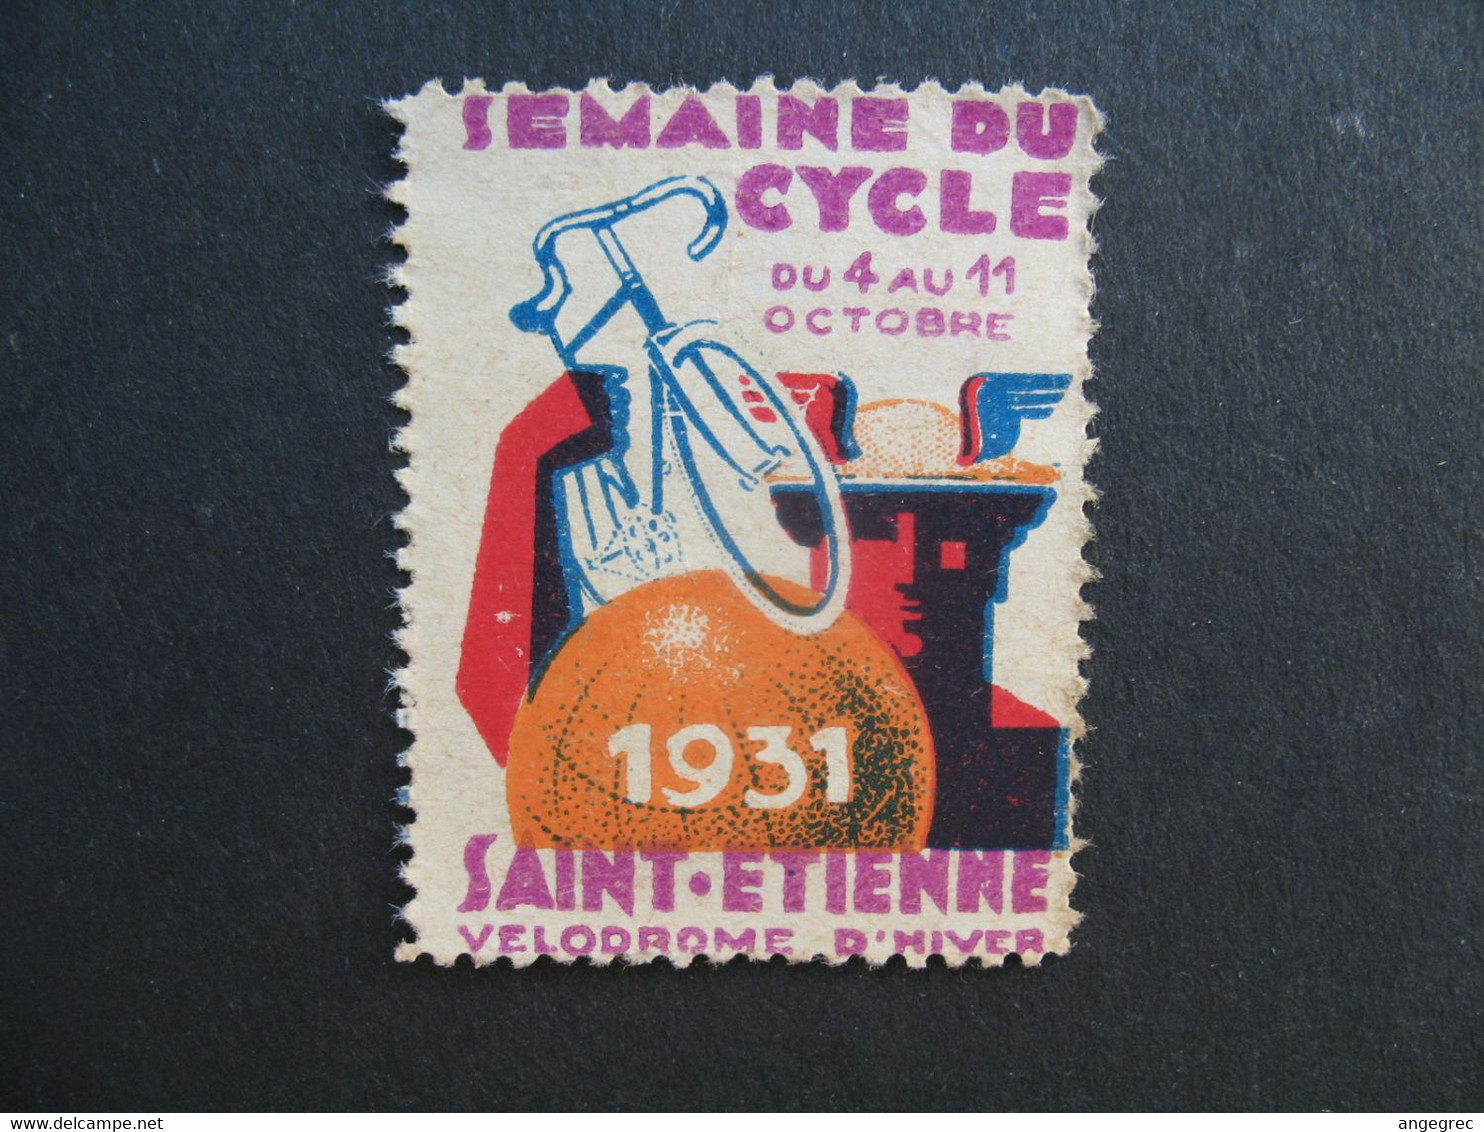 Vignette  1931 Semaine Du Cycle Saint-Etienne Vélodrome D'hiver - Sports